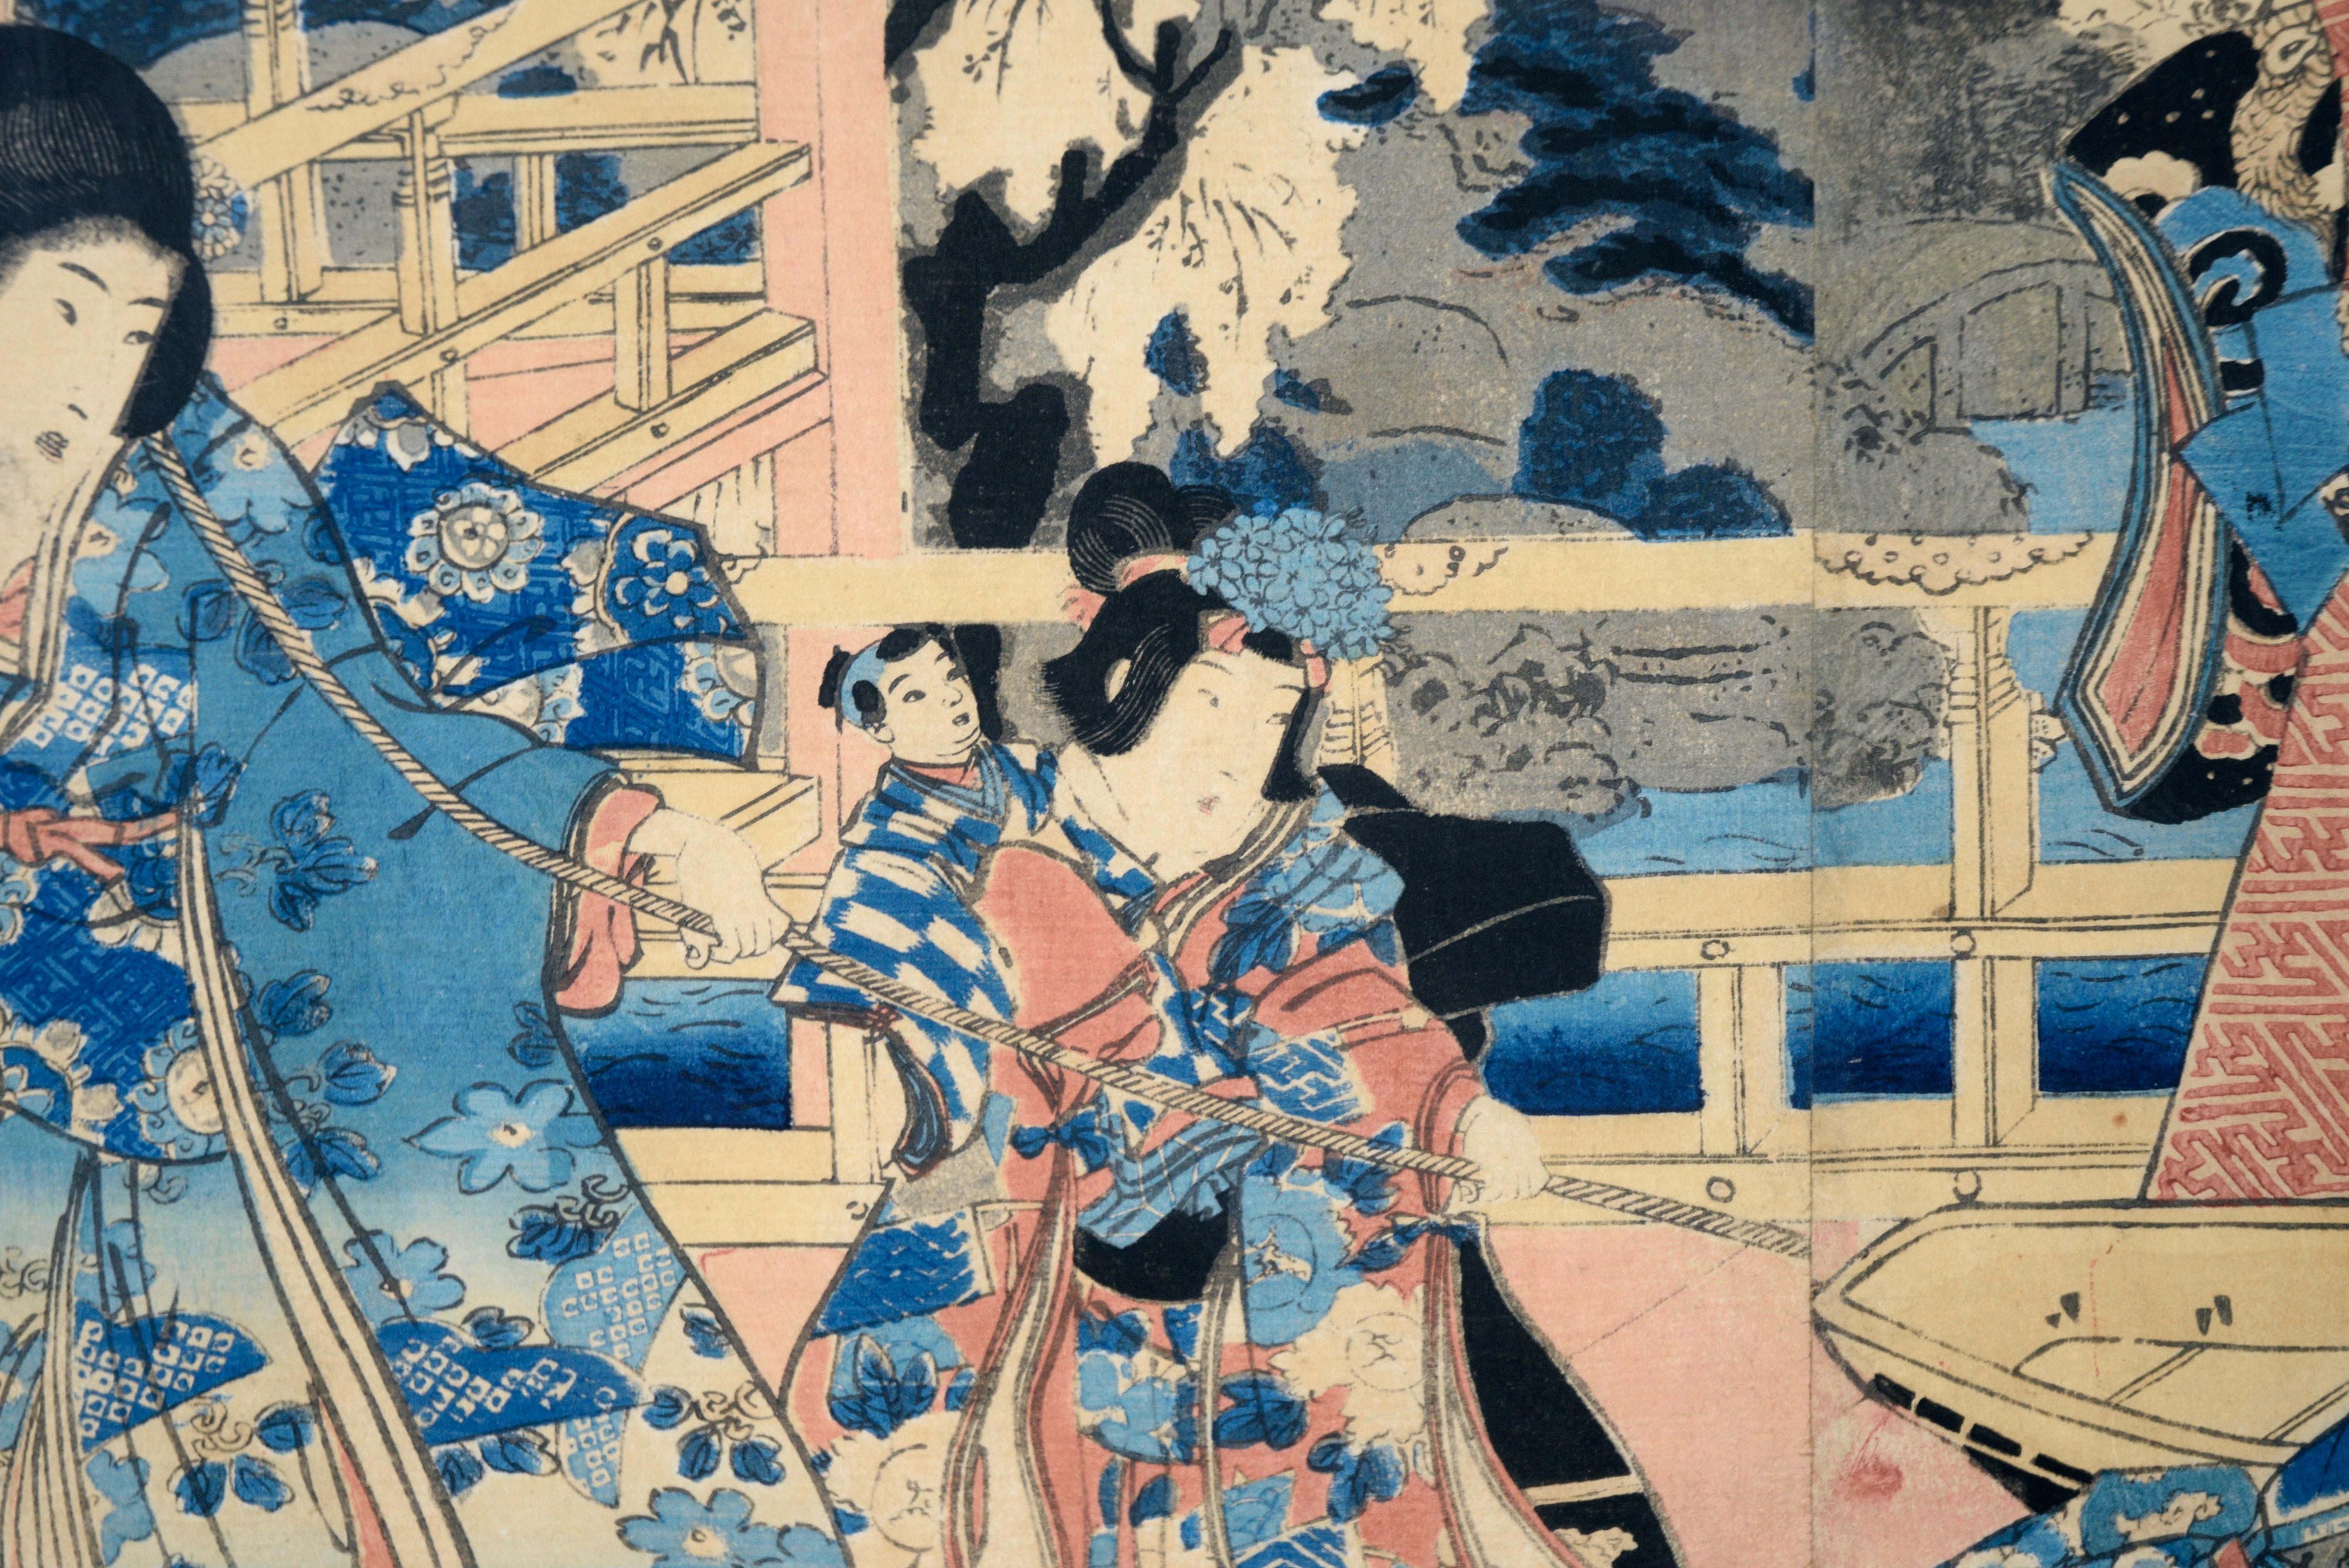 Elegante Museen des östlichen Genji – Japanisches Triptychon mit Holzschnitt auf Papier

Dynamischer Farbholzschnitt mit mehreren elegant gekleideten Figuren von Utagawa Kunisada I (Toyokuni III) (Japaner, 1786-1864). Mehrere gut gekleidete Personen